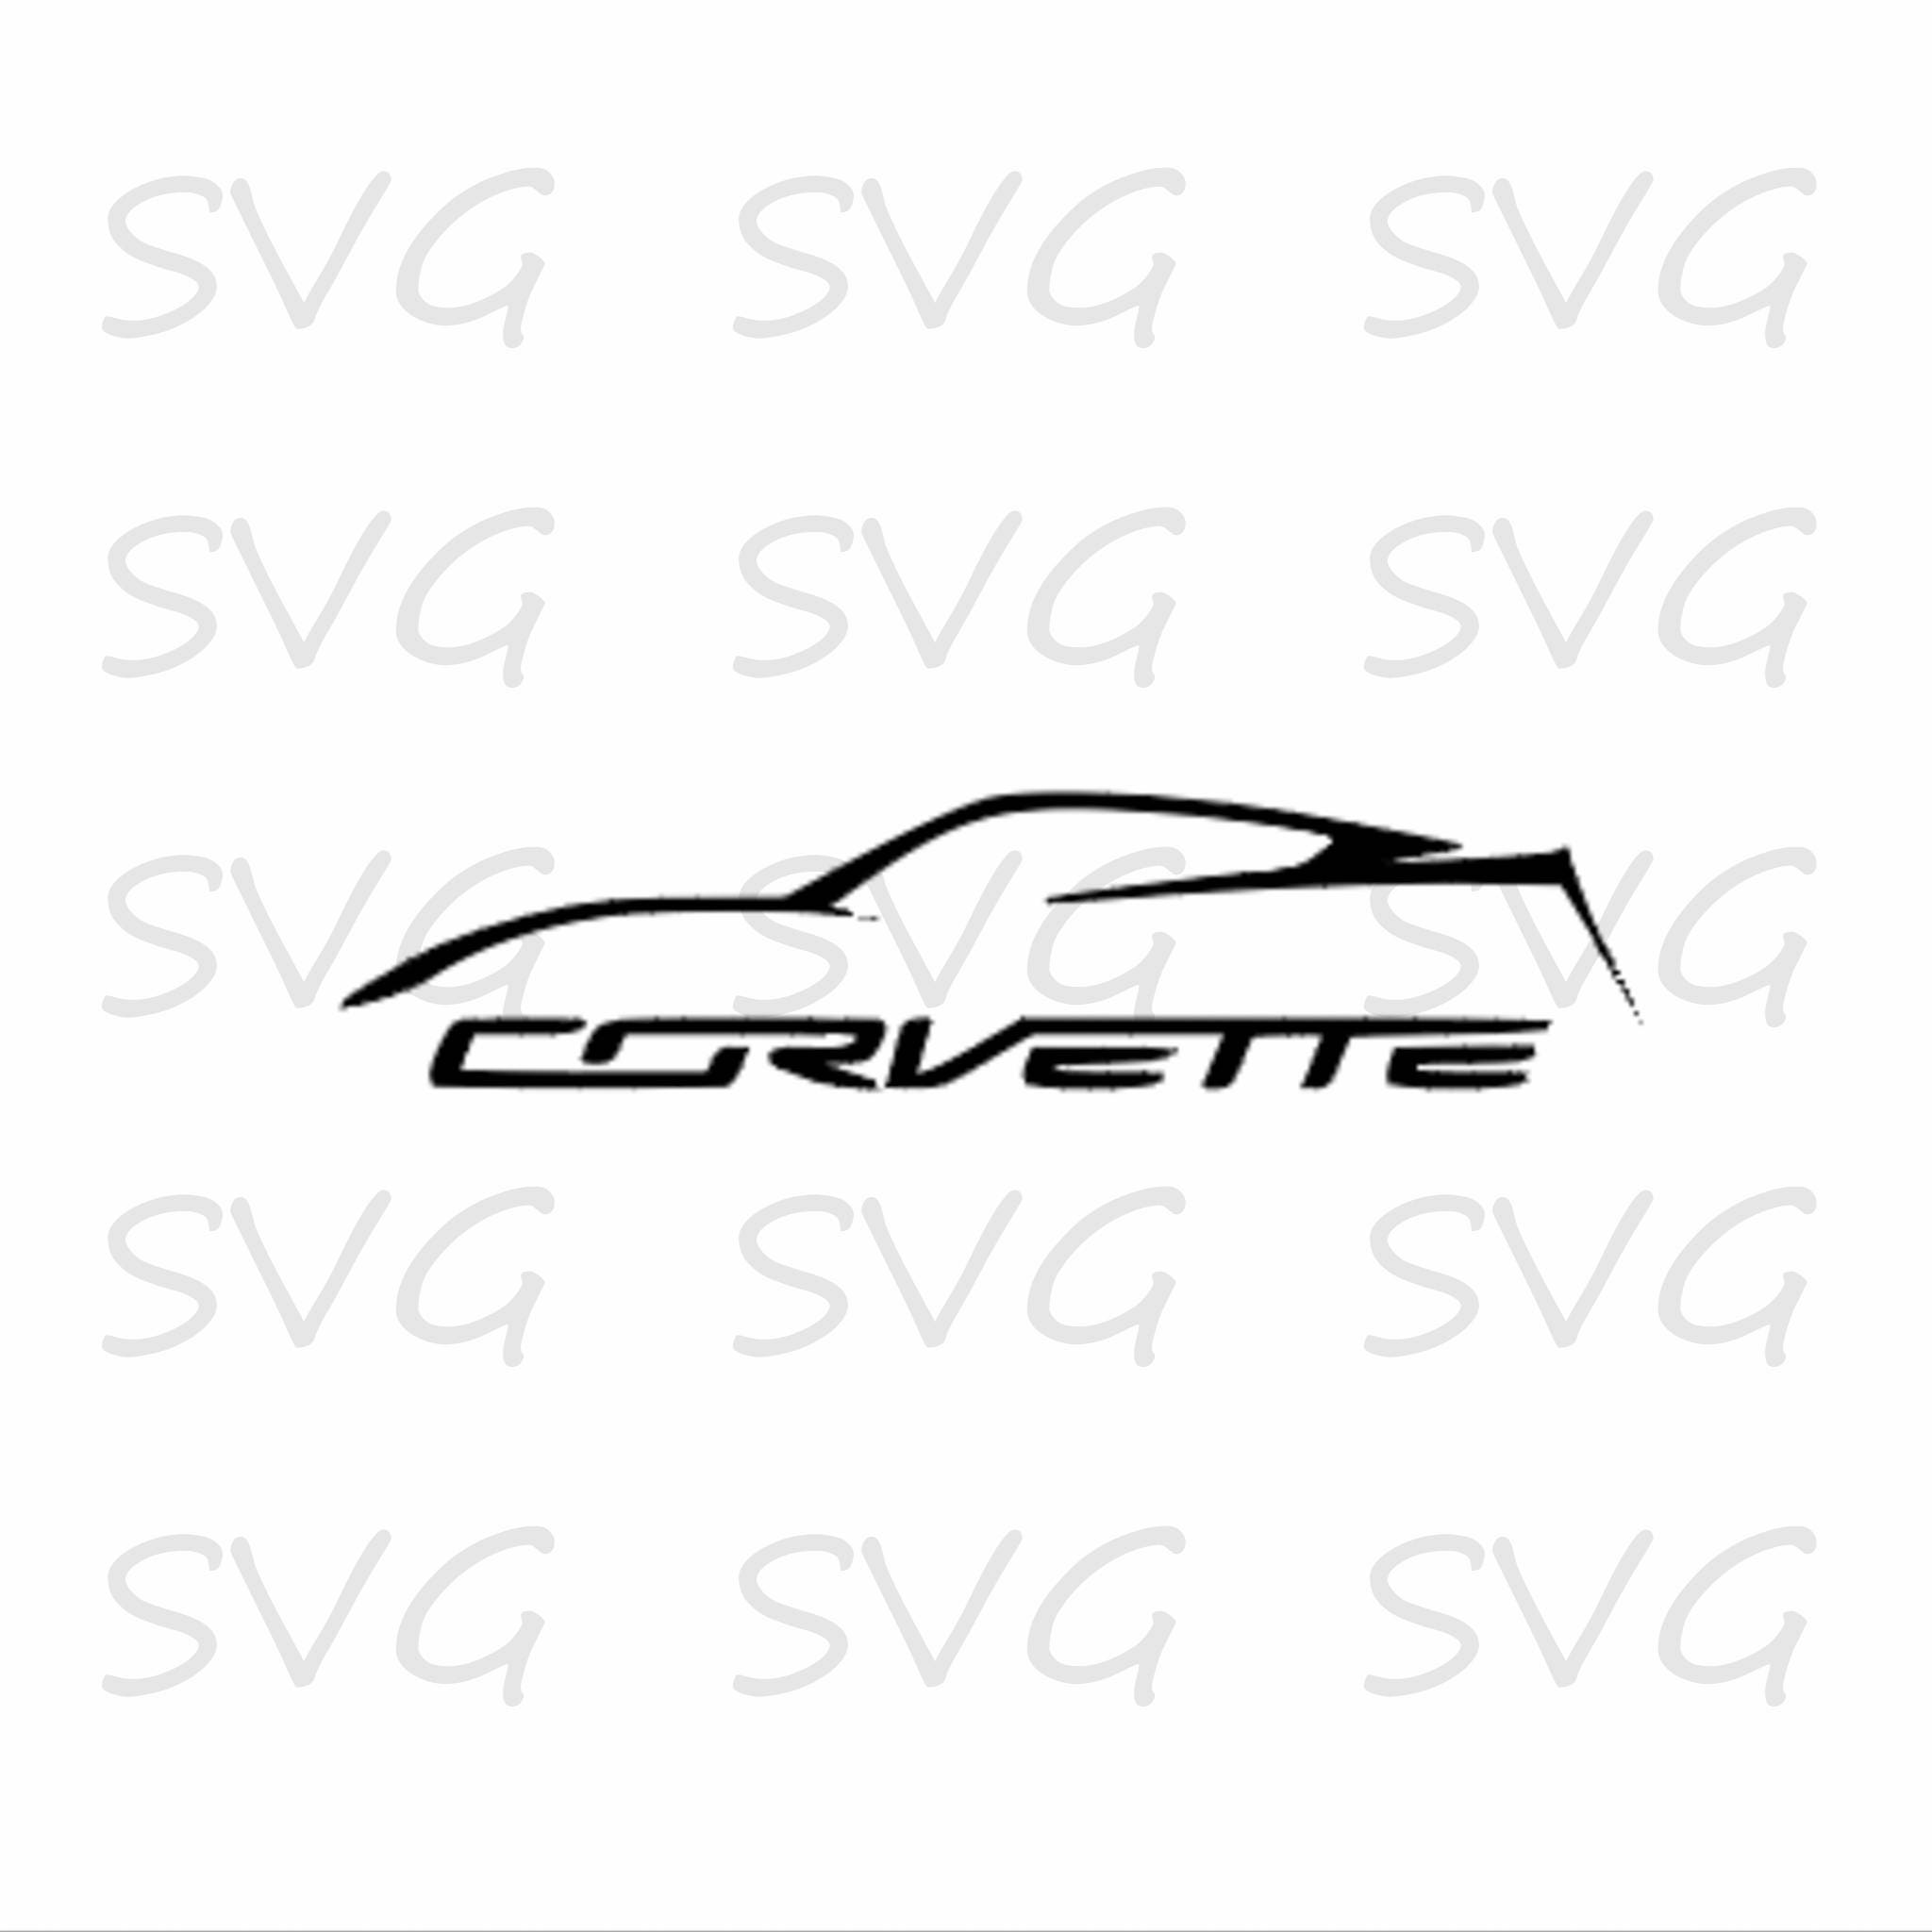 Download Corvette svg dxf fcm eps and png. Corvette Cut File | Etsy